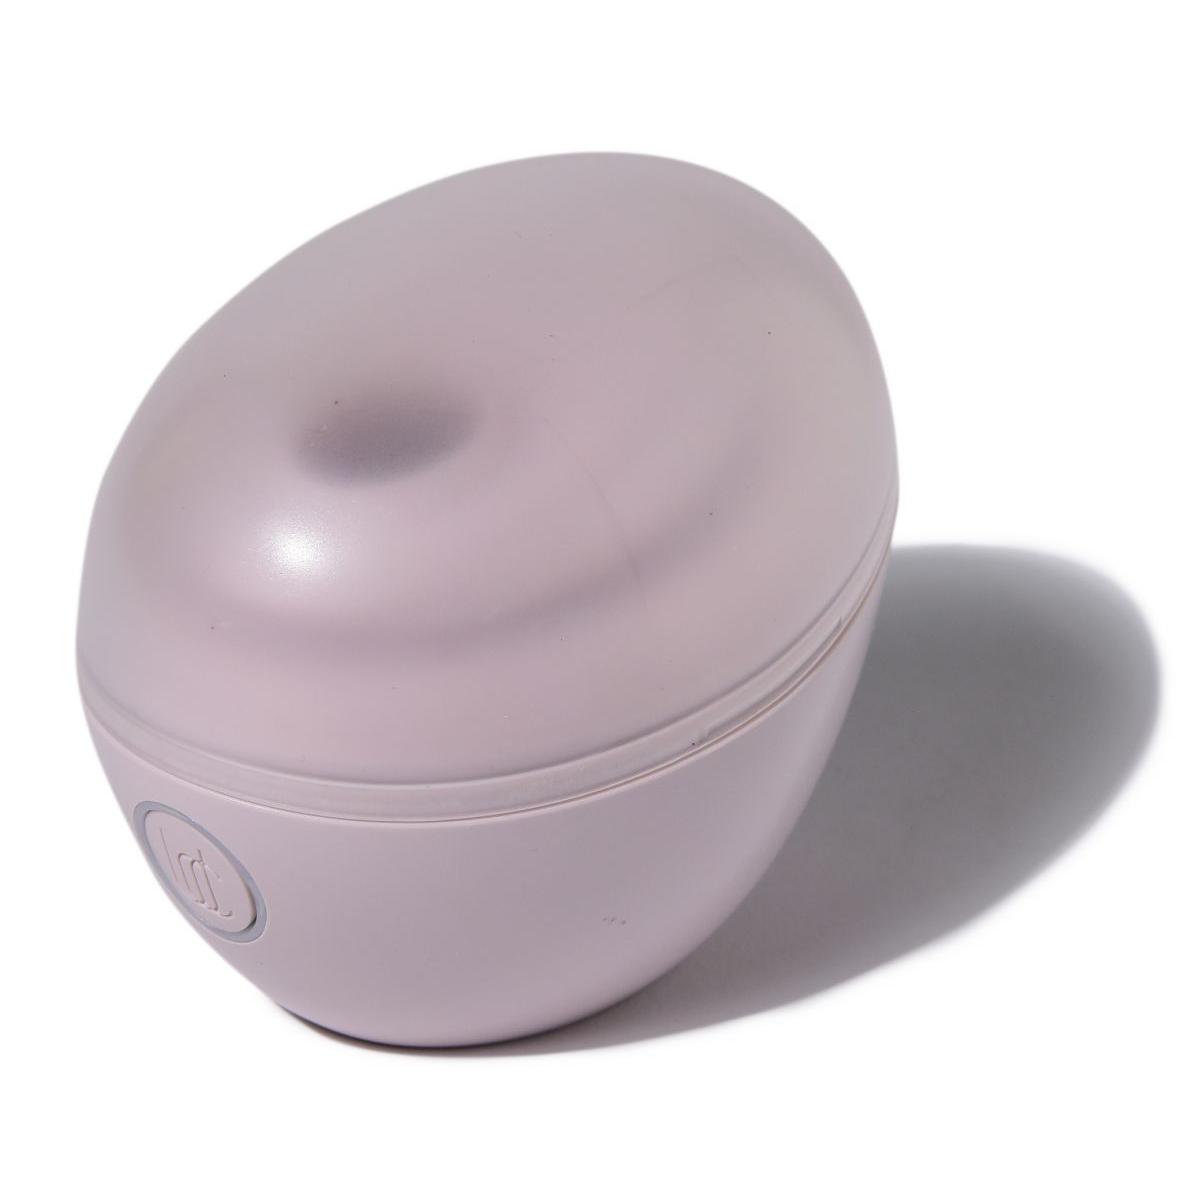 Нежно-розовый вакуумный стимулятор Baci Premium Robotic Clitoral Massager